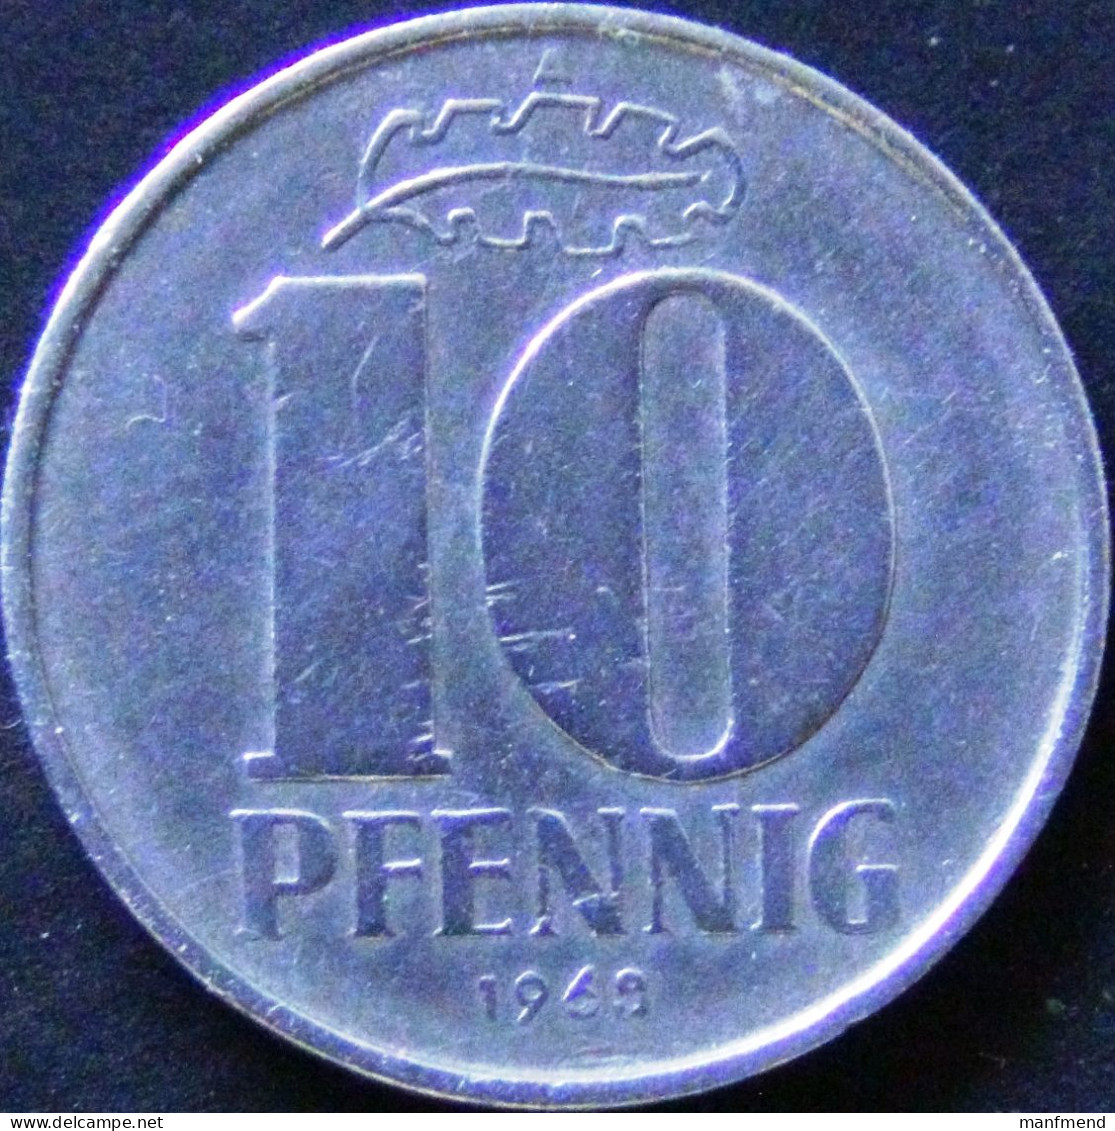 Germany - DDR - 1968 - KM 10 - 10 Pfennig - VF - Look Scans - 10 Pfennig